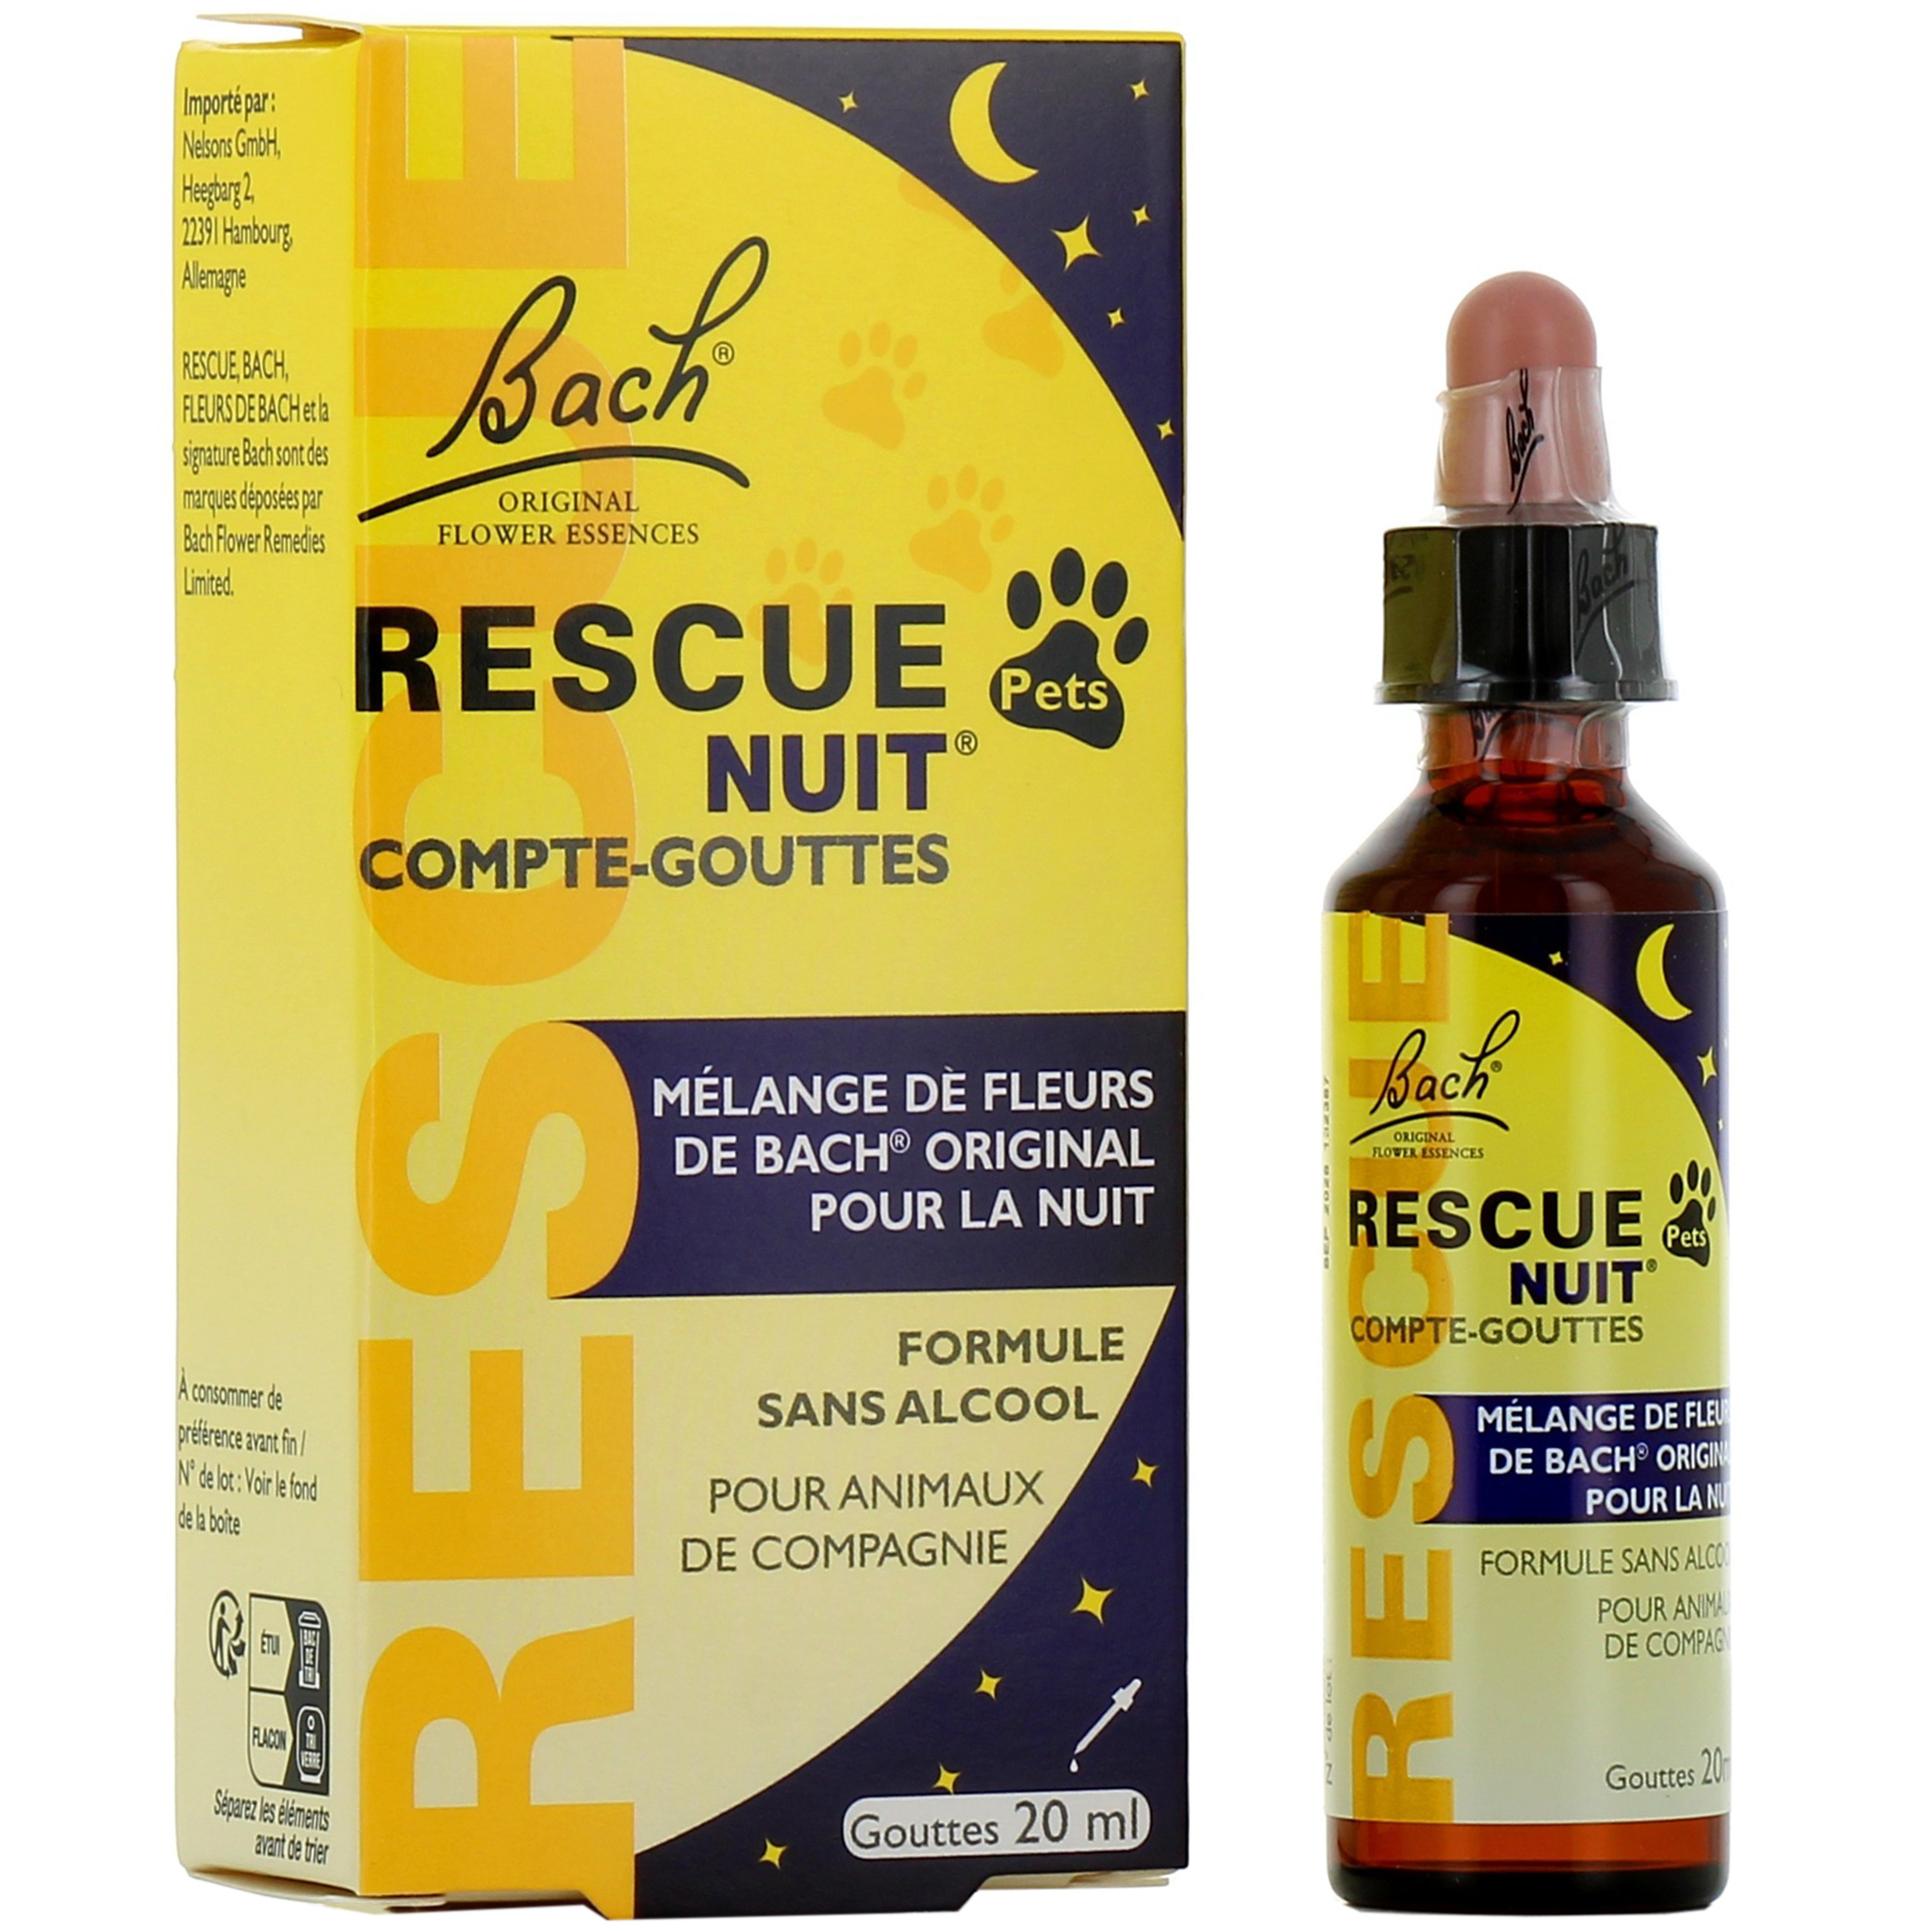 Rescue Bach Nuit Compte Gouttes 10ml